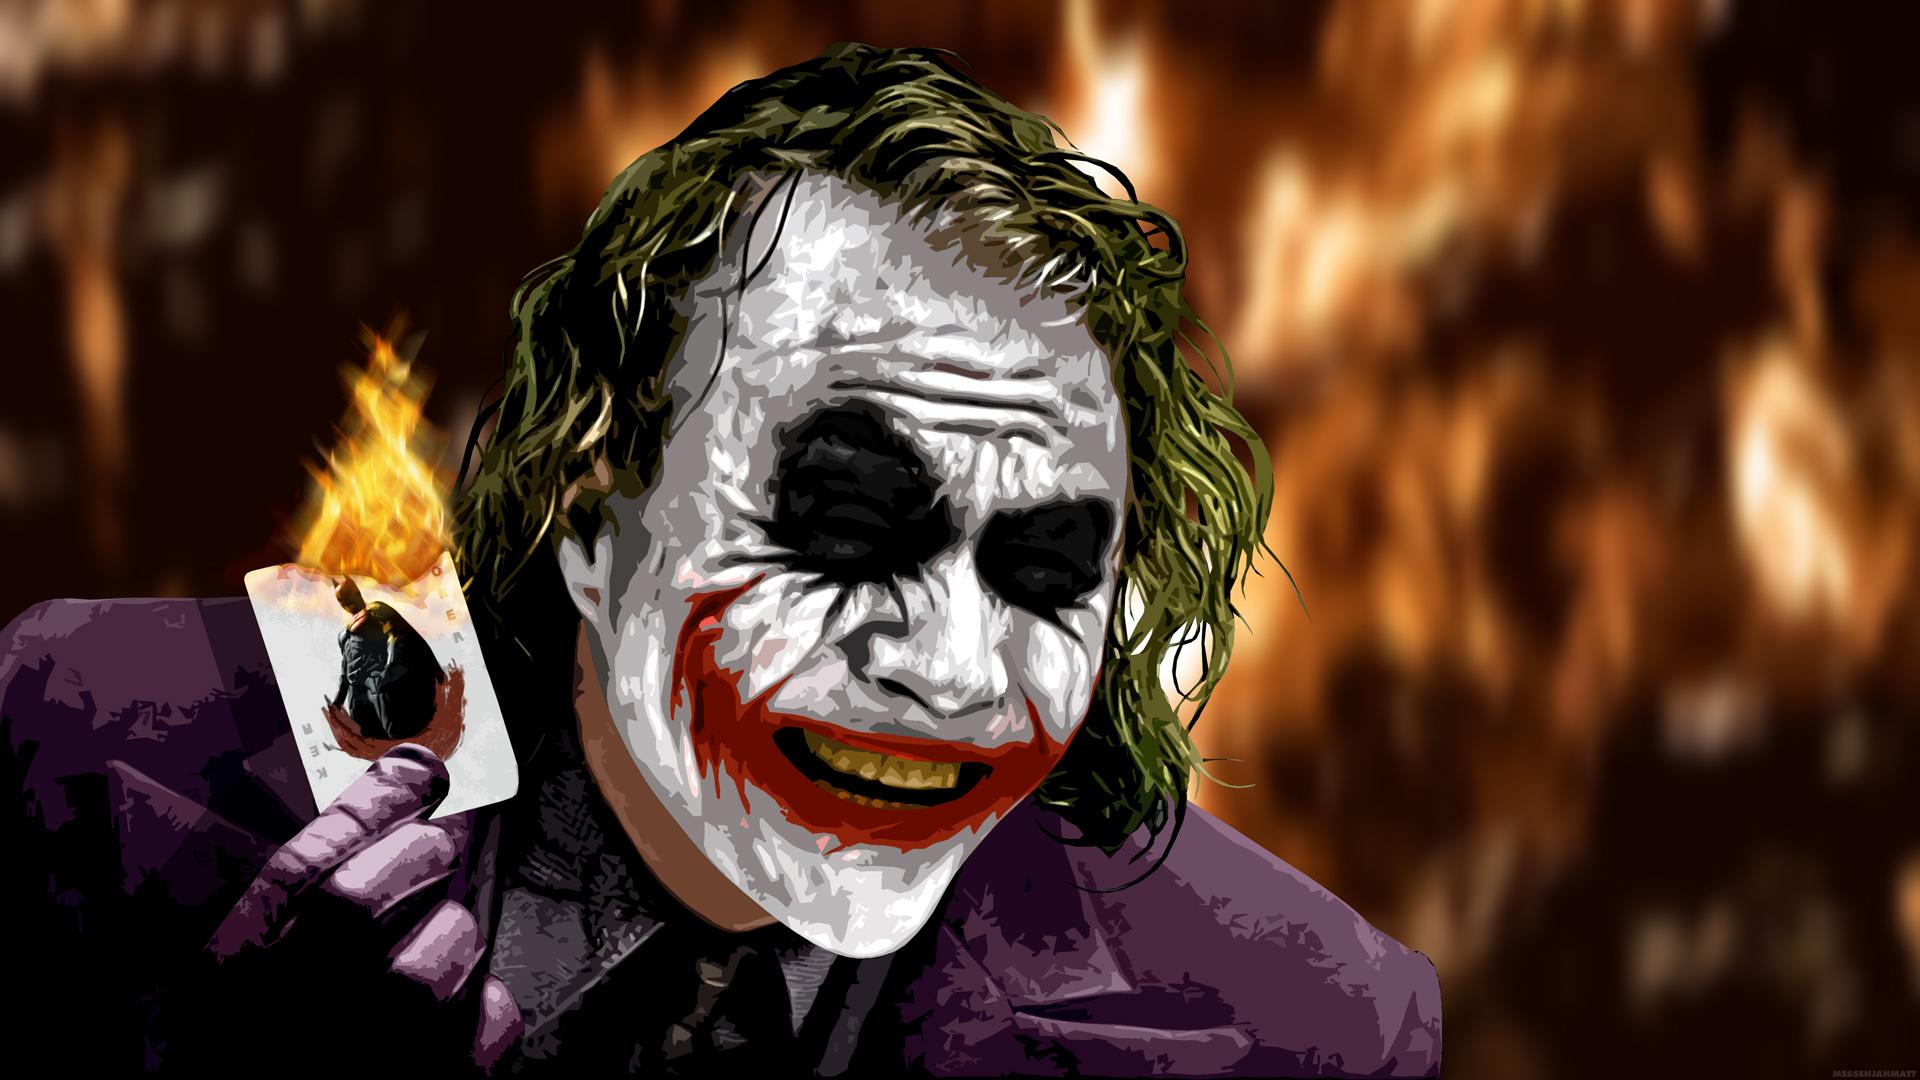 The Joker Burning & Laughing. The Jester's Corner